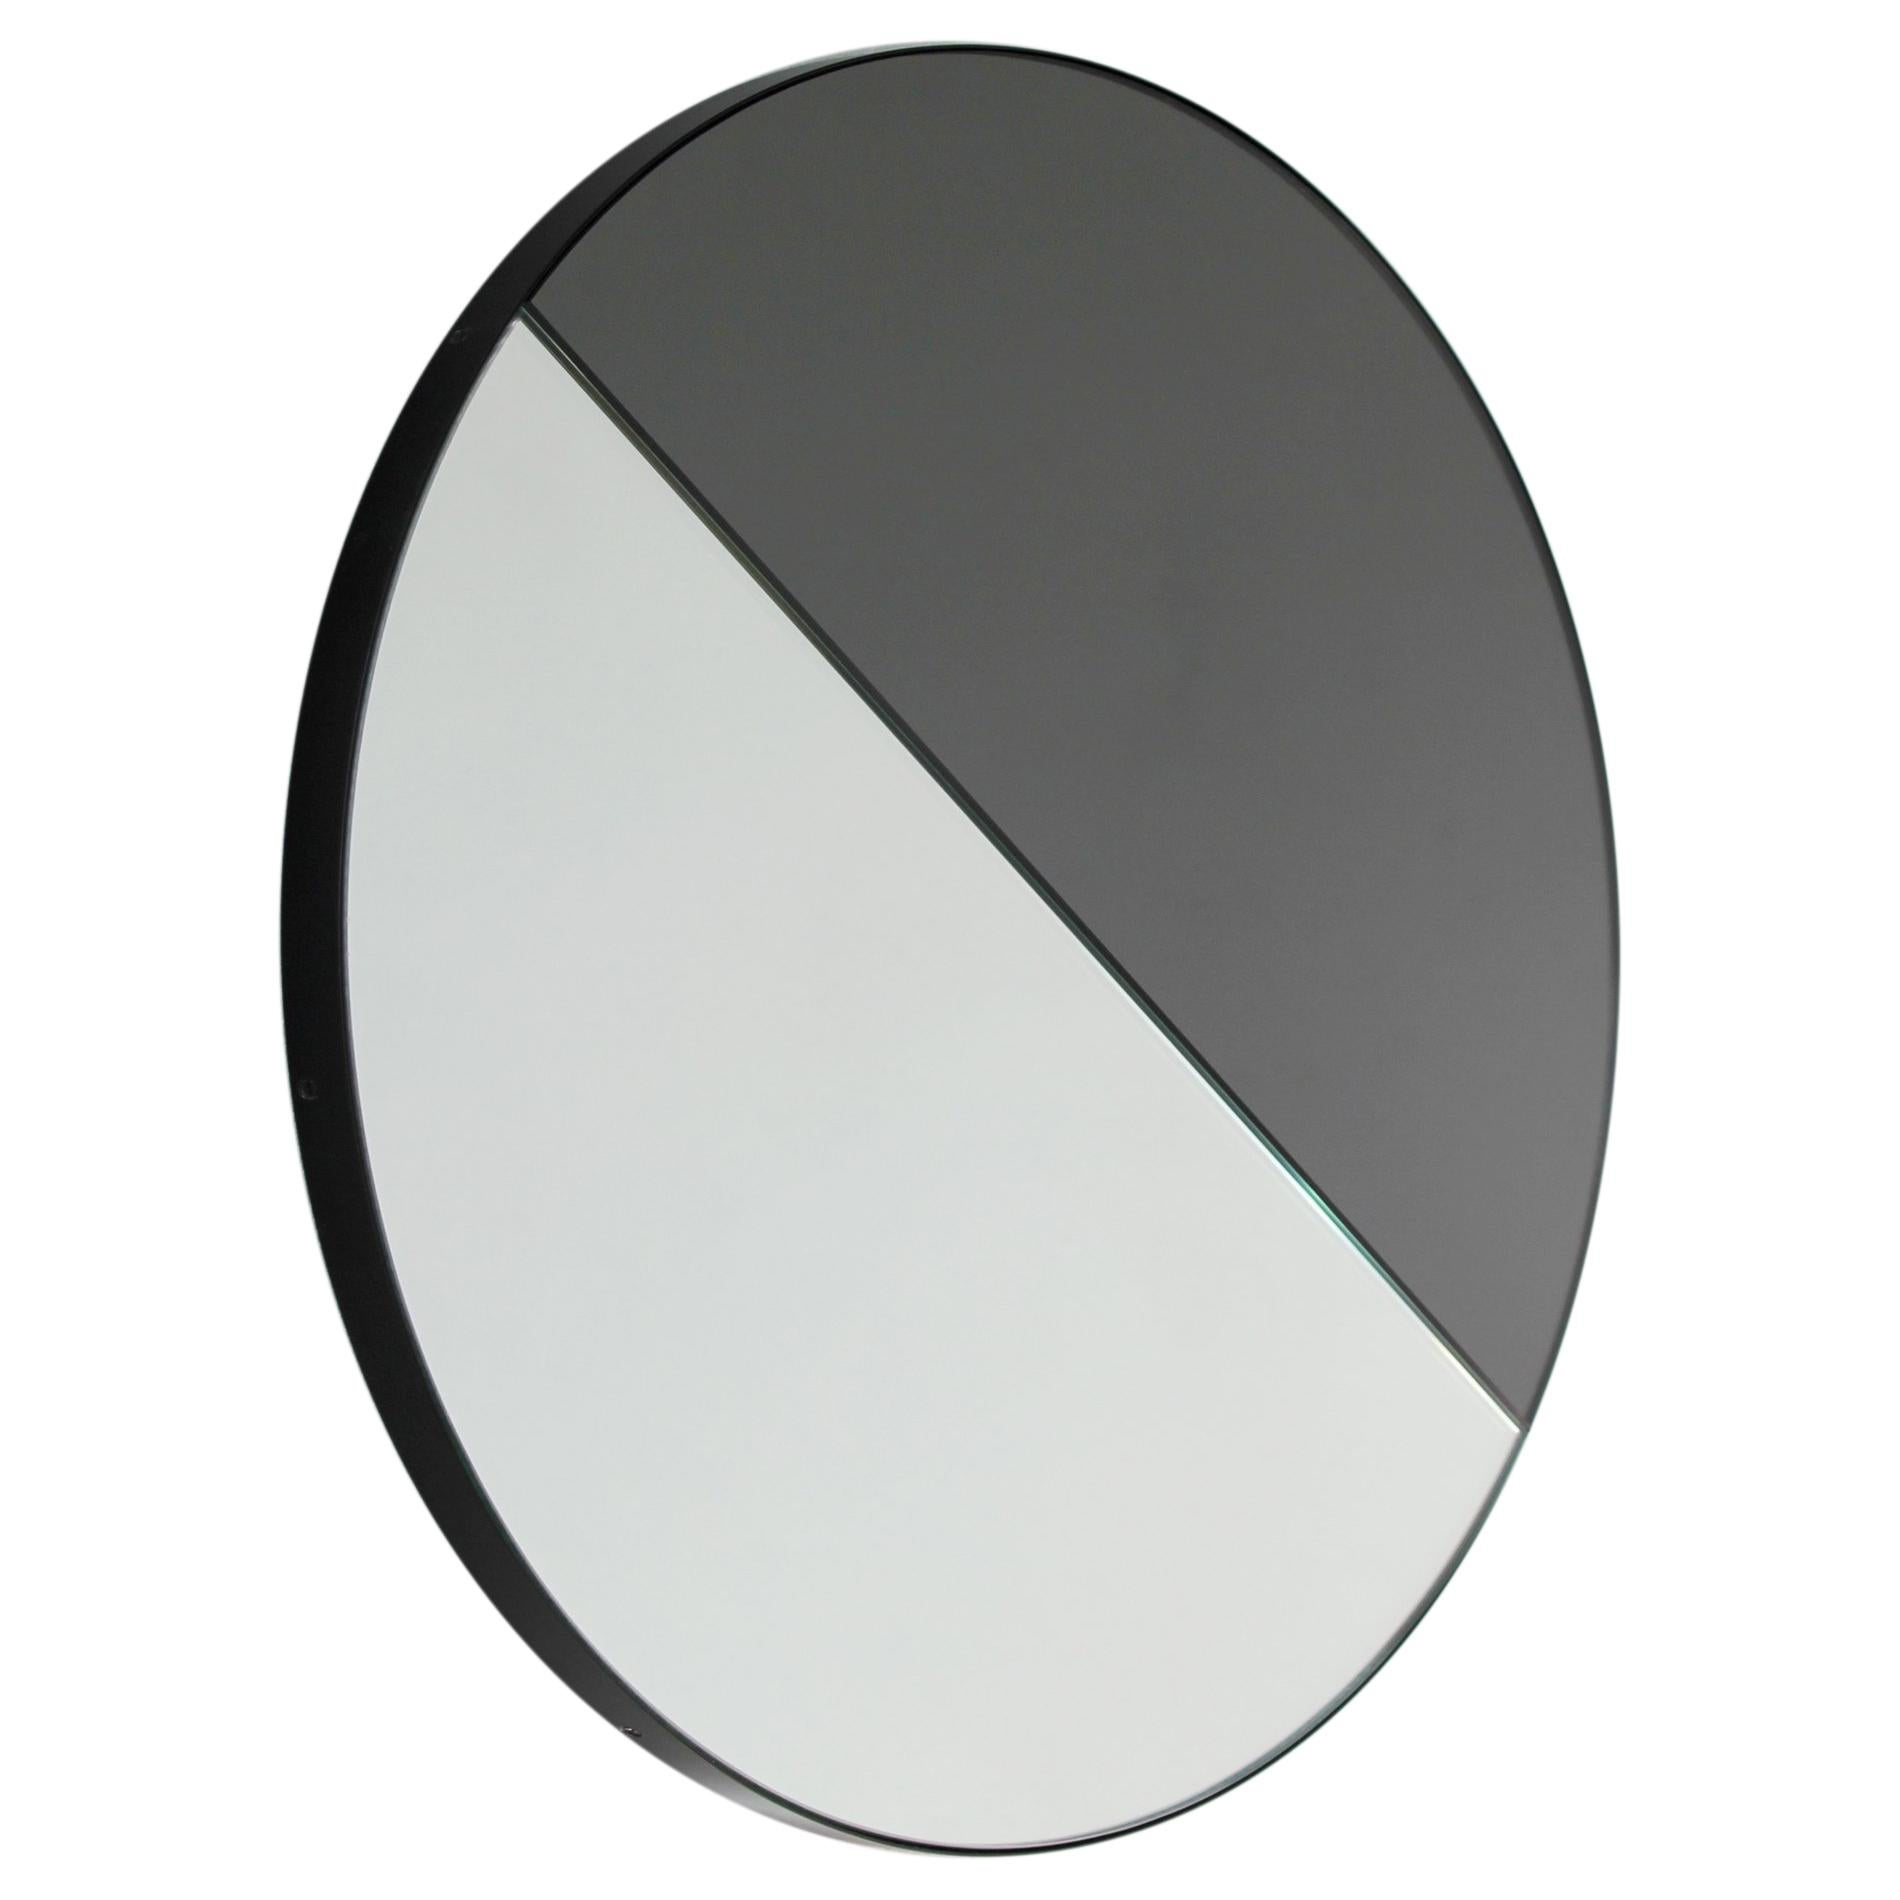 Orbis Dualis Miroir rond contemporain à teinte mixte et cadre noir, XL